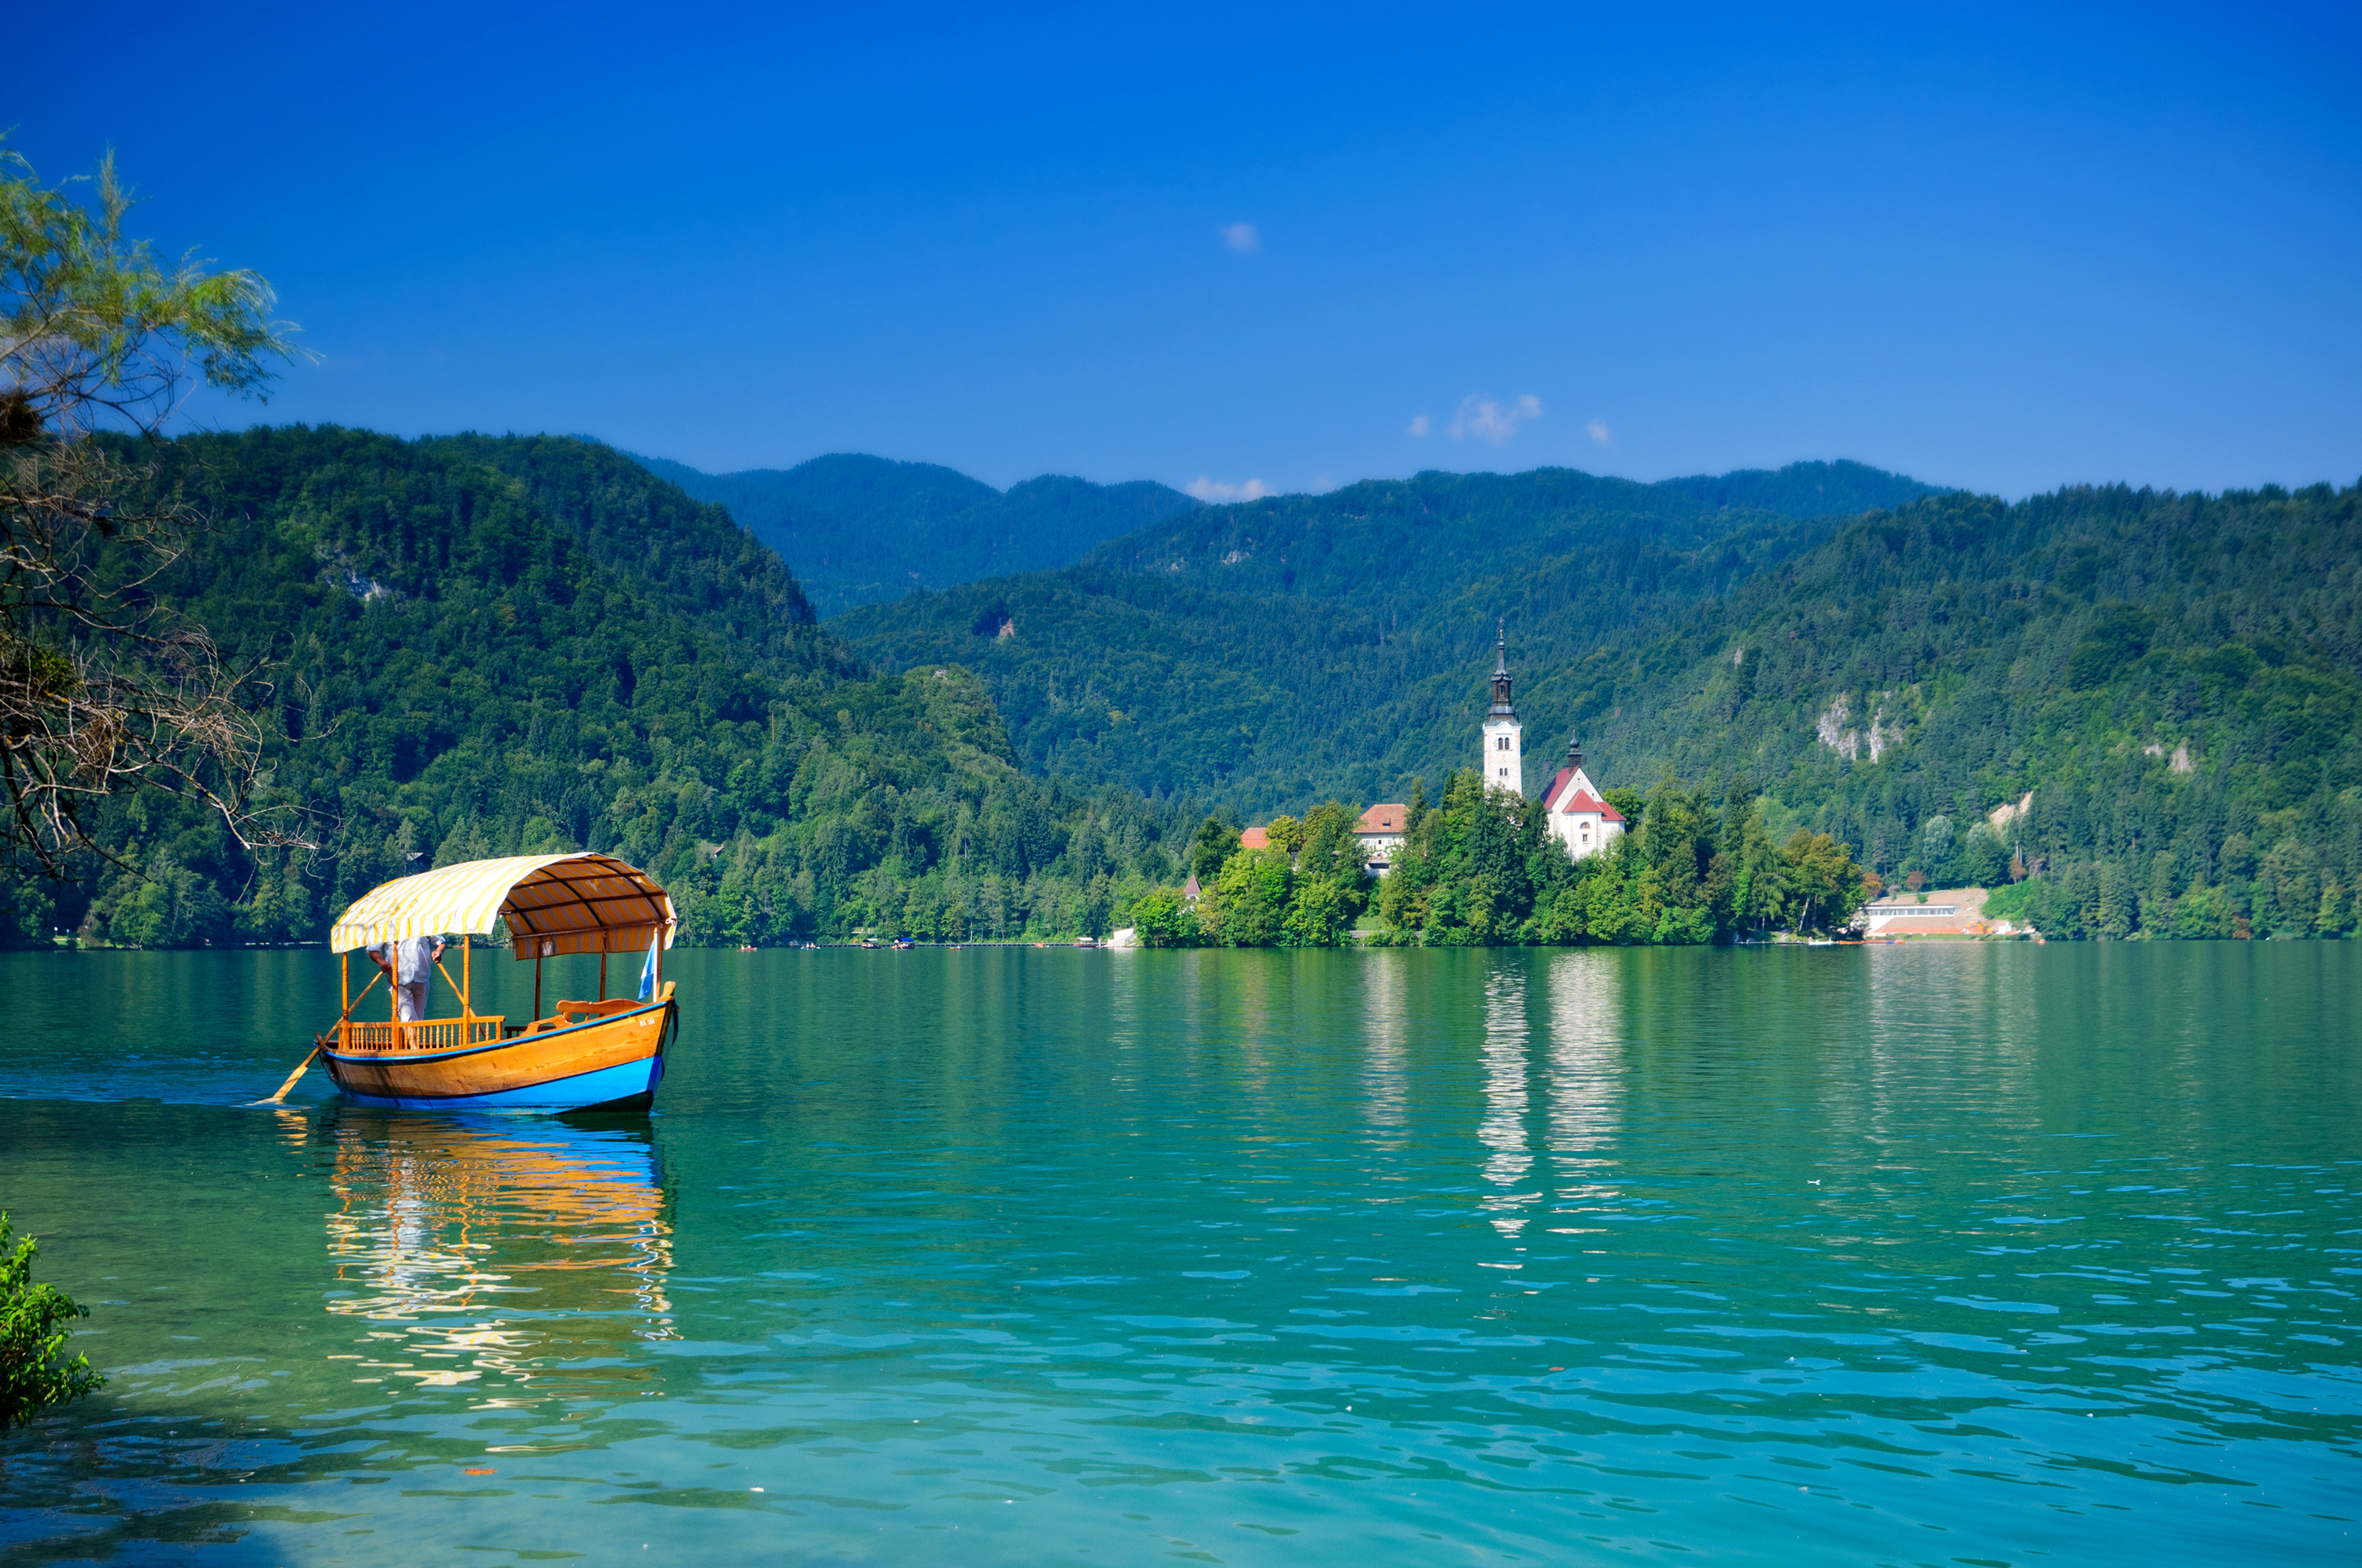 Riconoscimento "Slovenia Green" per la destinazione (comune) di Bled